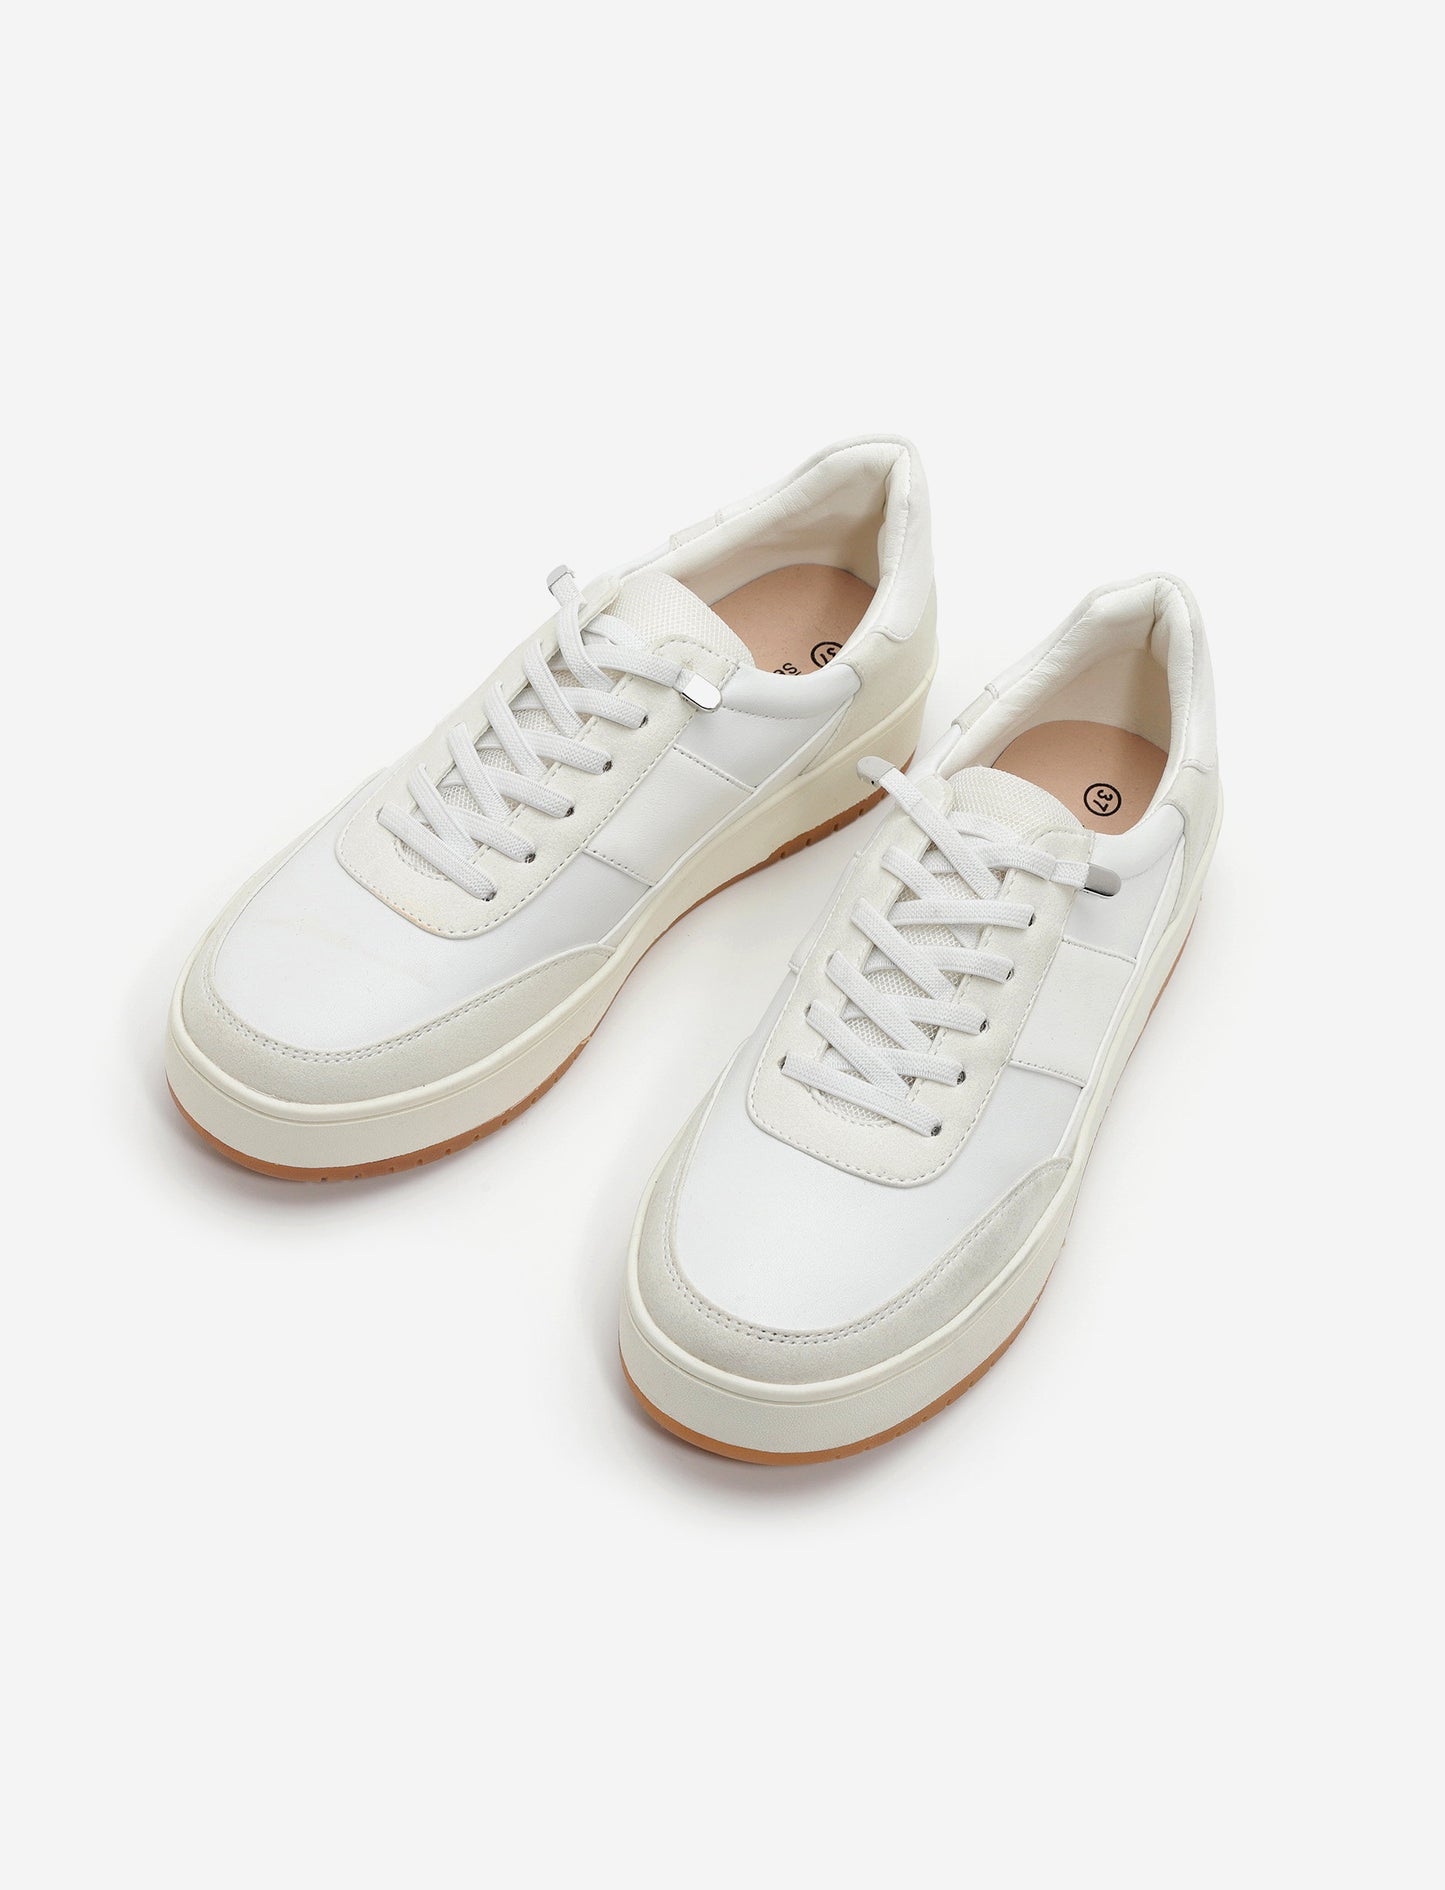 Seventy Nine - נעלי סניקרס סבנטי ניין דגם מדיסון בצבע לבן